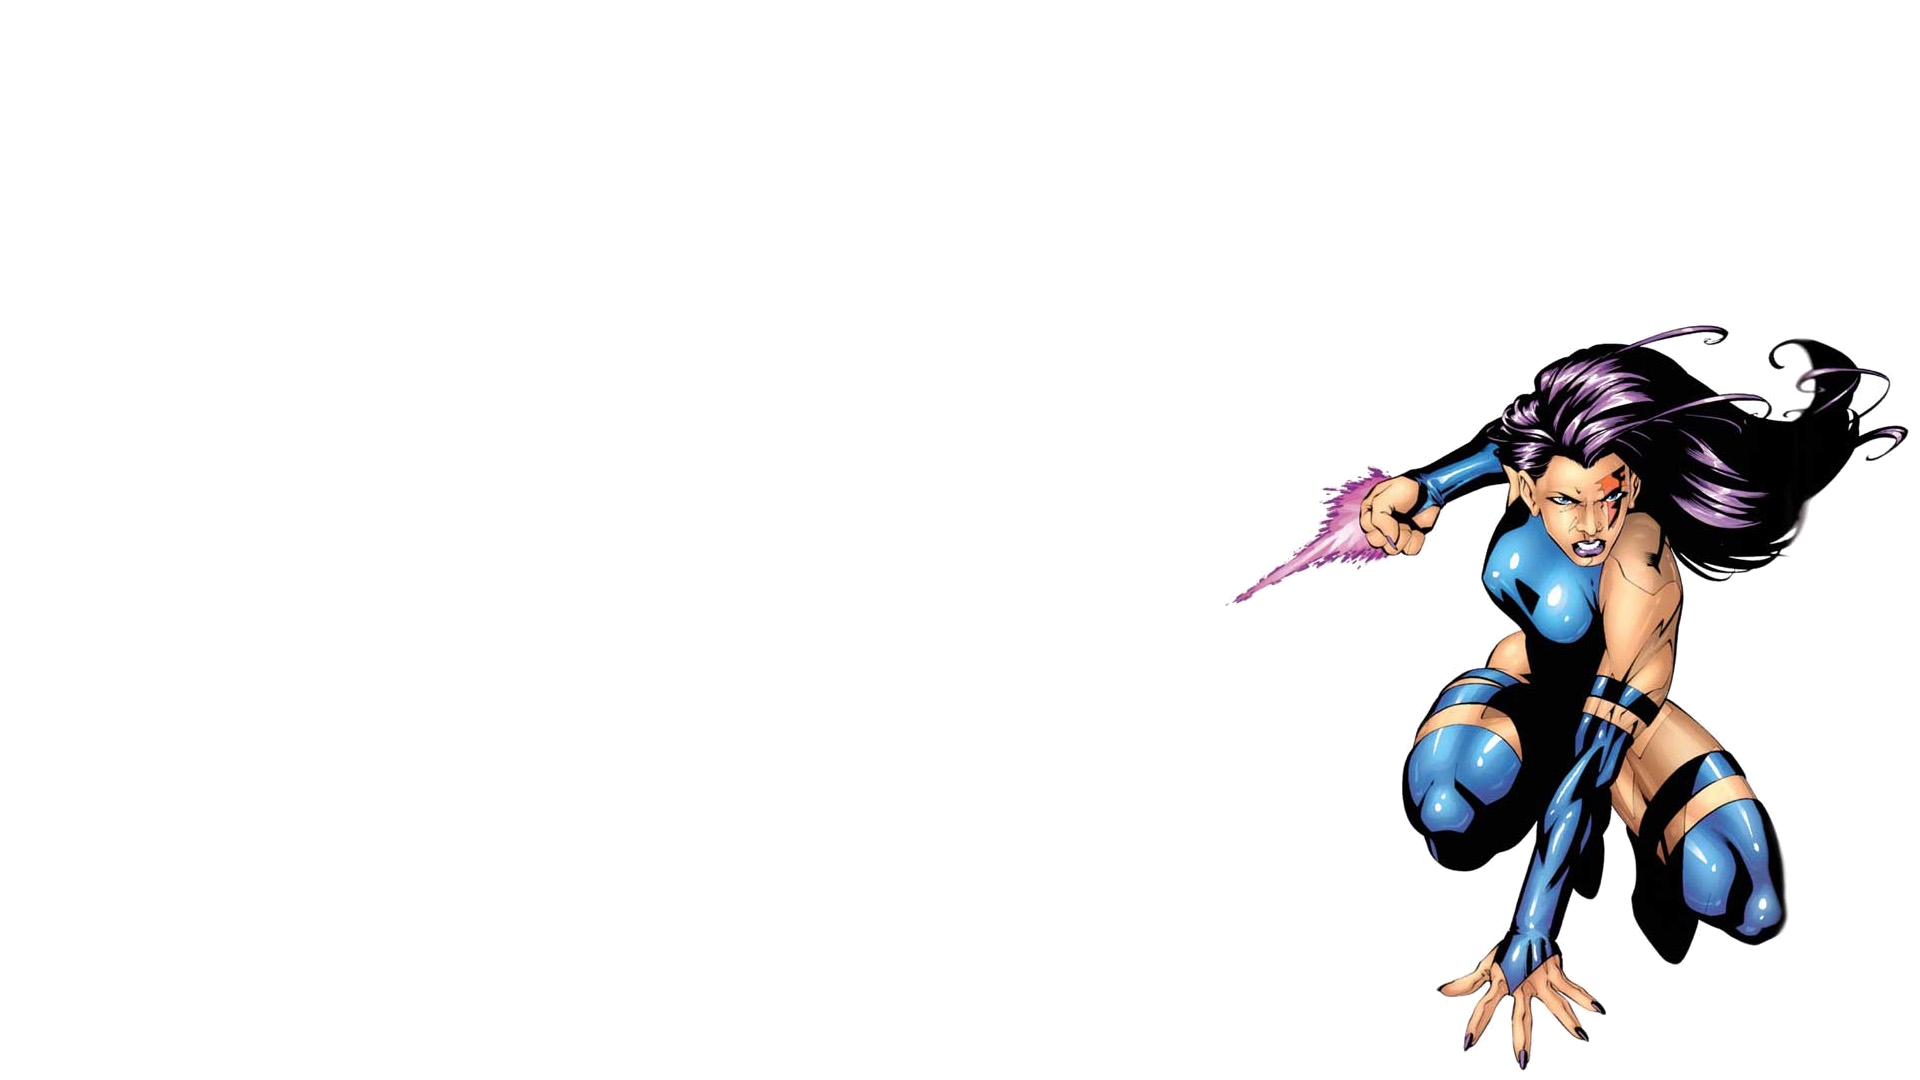 Comics X-Men HD Wallpaper | Background Image